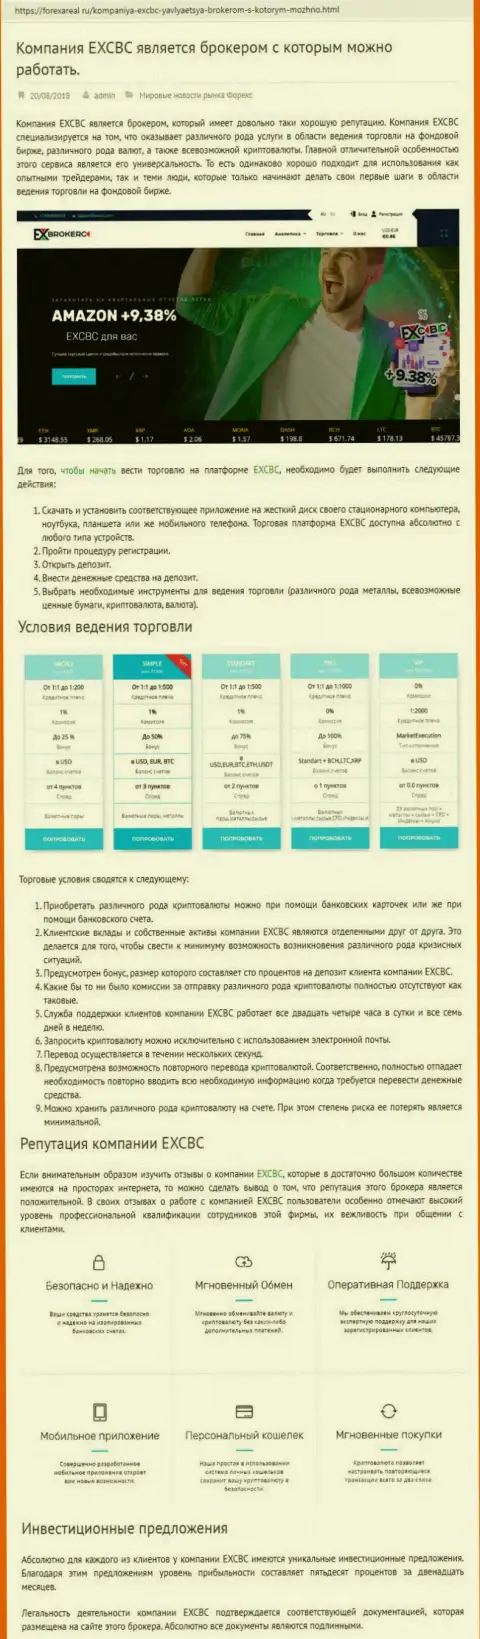 Web-сервис ФорексАреал Ру предоставил анализ деятельности Forex дилинговой компании EX Brokerc